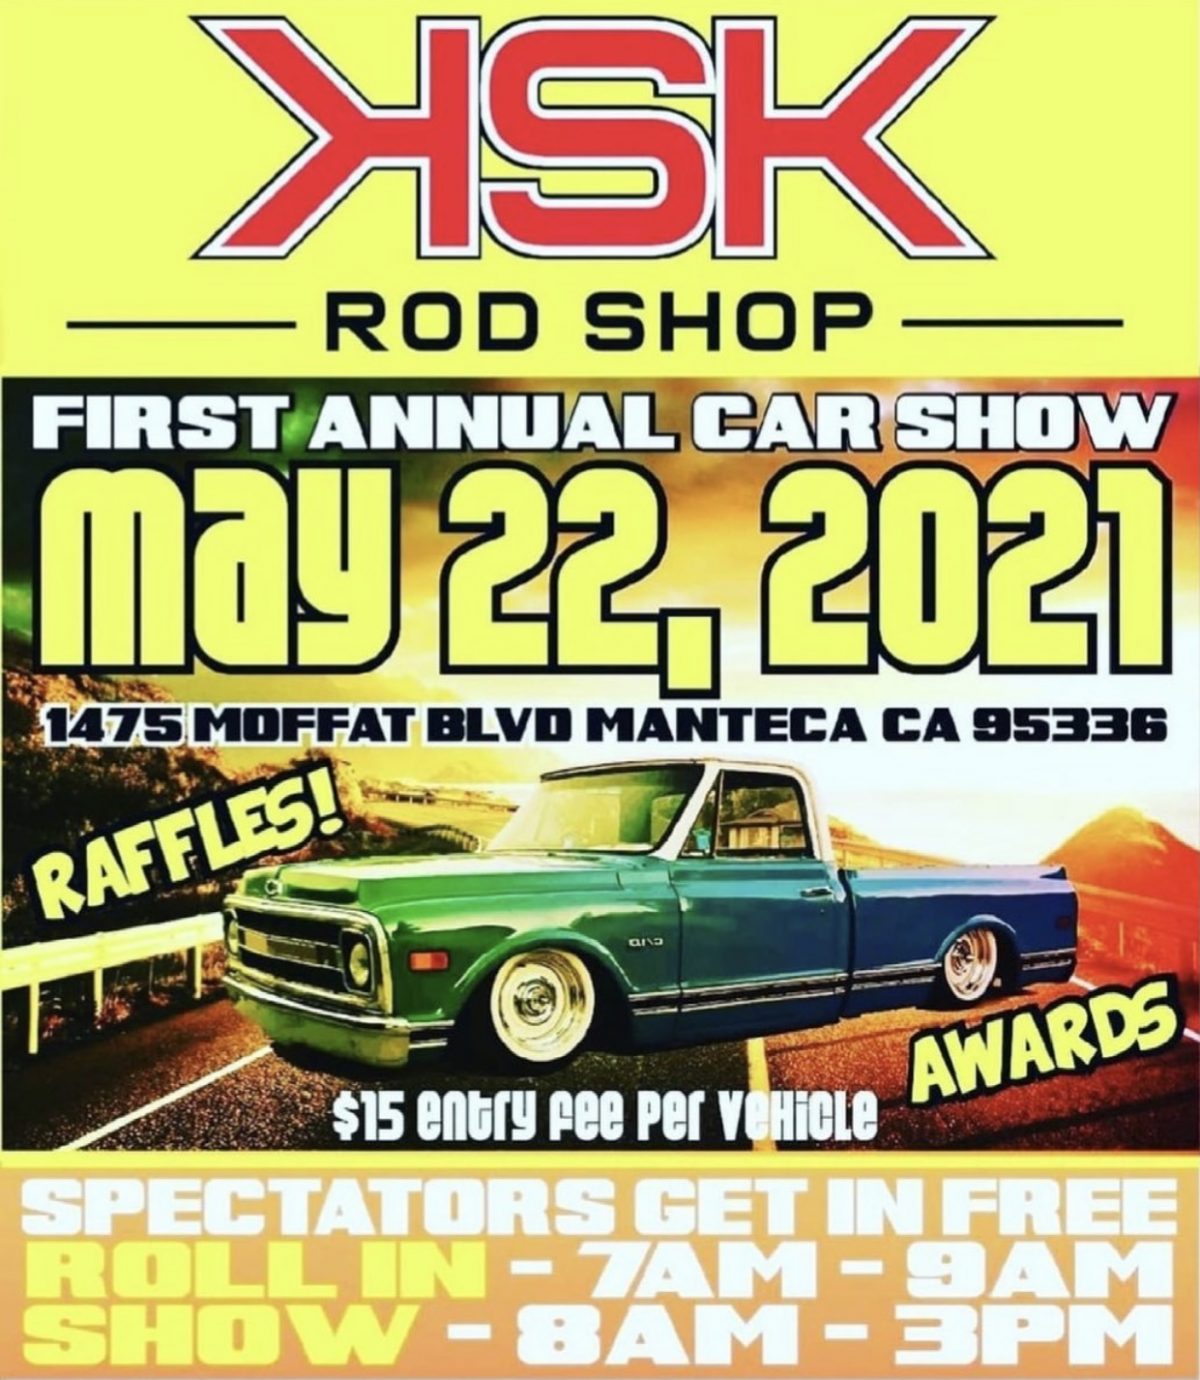 KSK Rod Shop Car Show